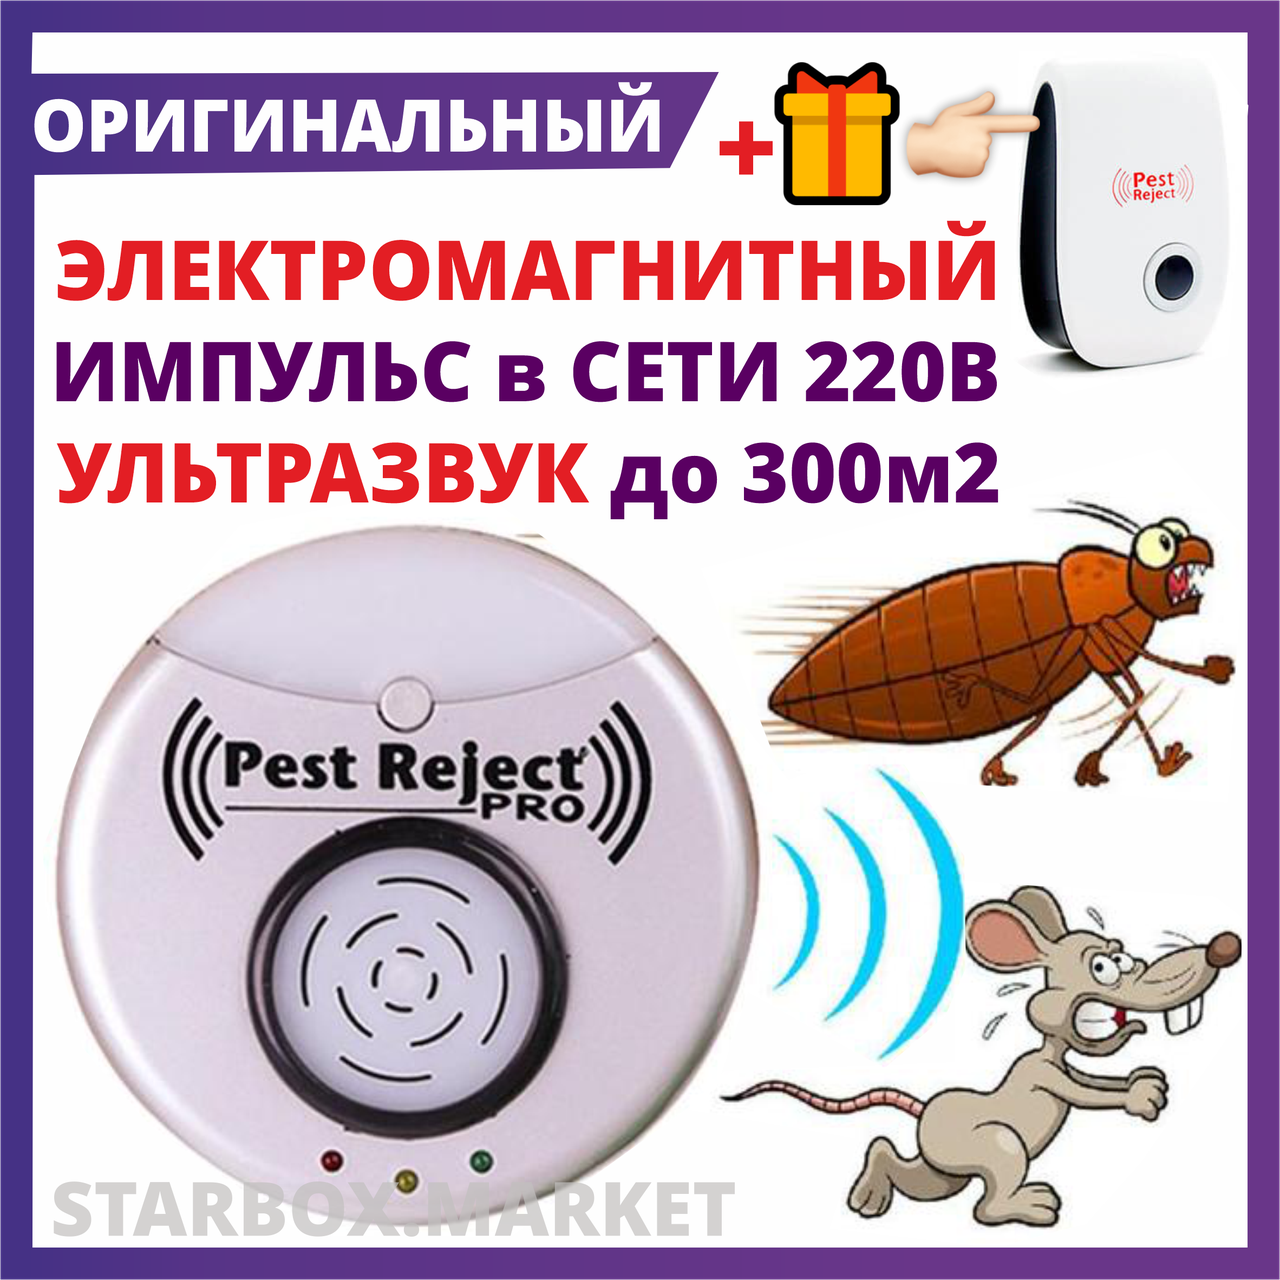 Отпугиватель грызунов, насекомых PRO Ультразвуковой + Электромагнитный  от тараканов мышей крыс Pest Reject